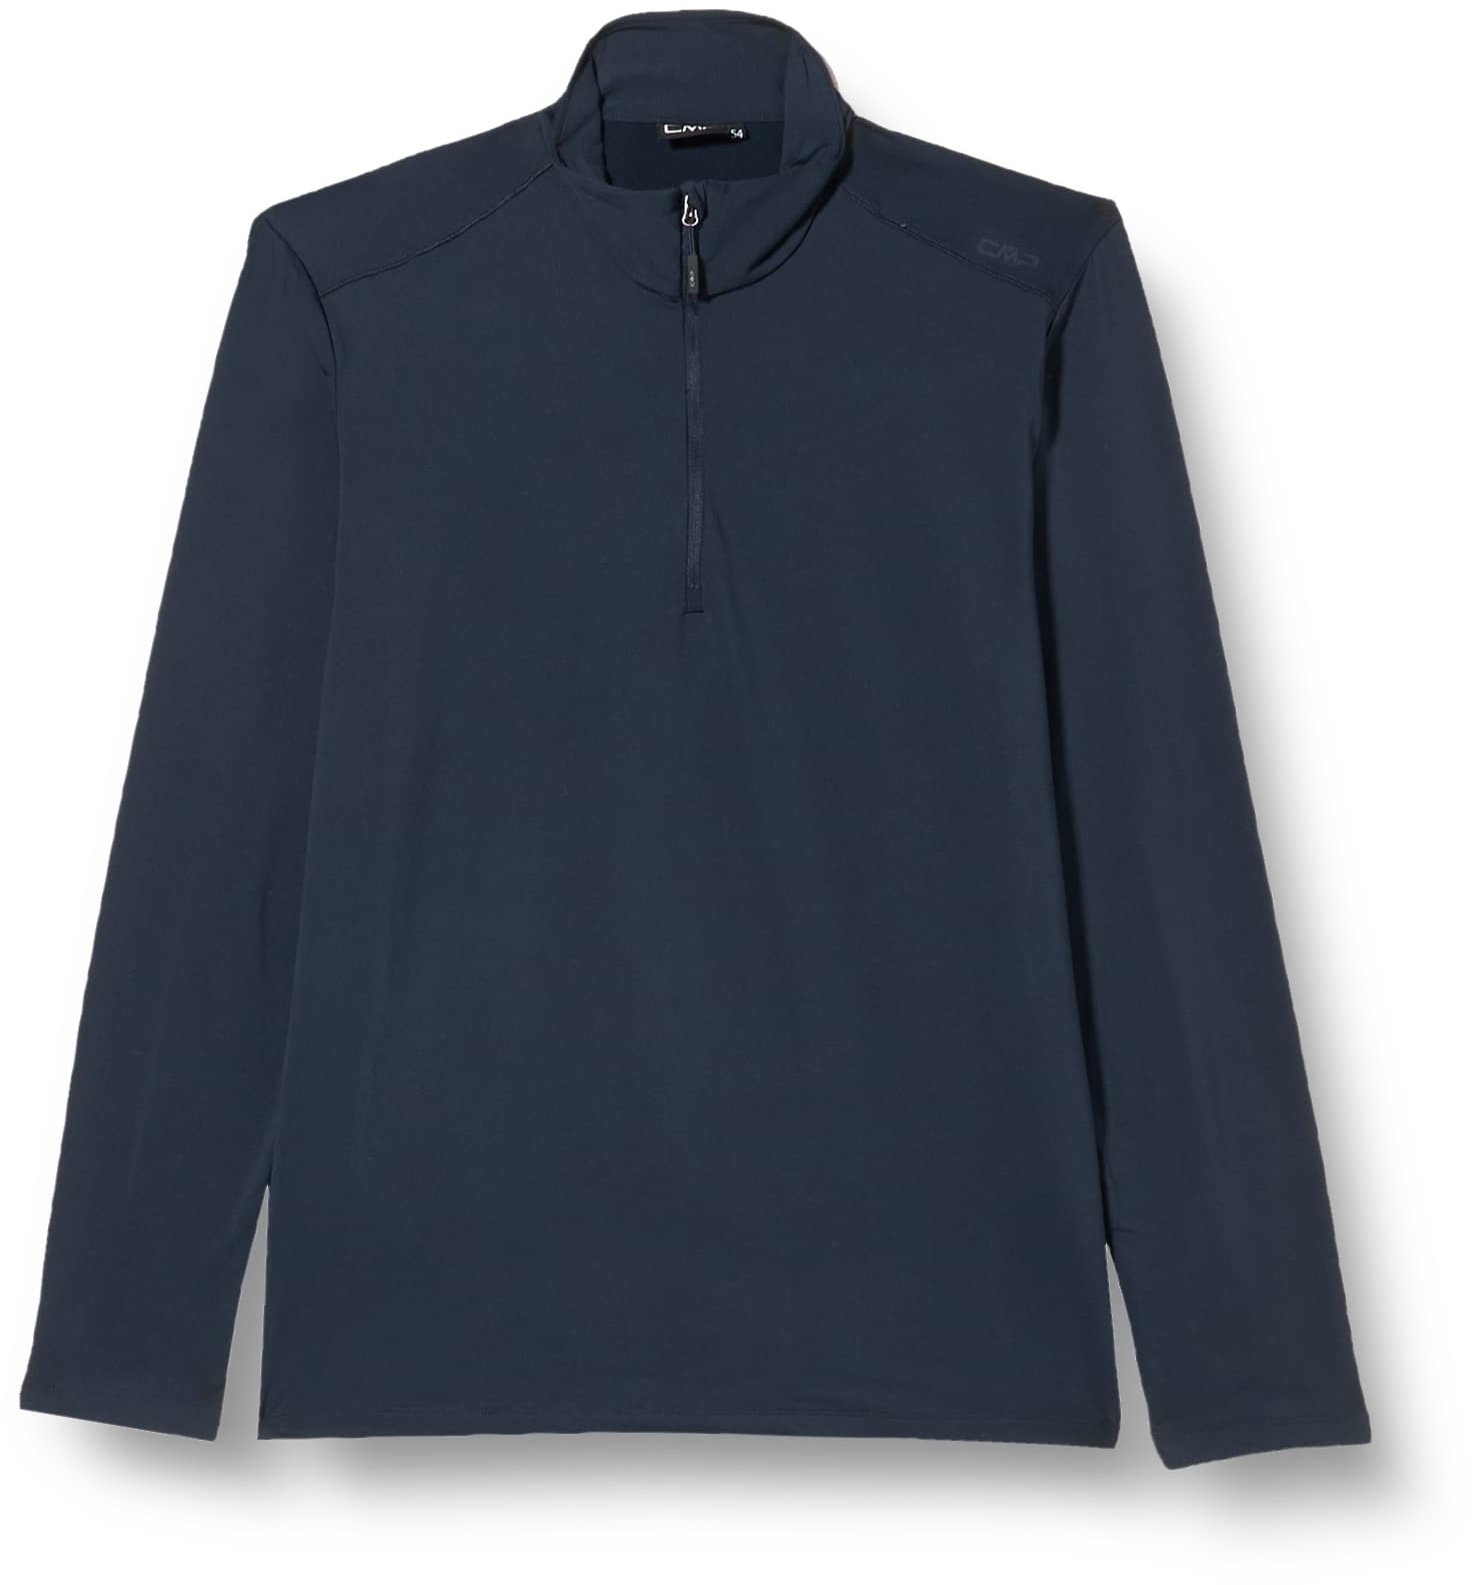 CMP - Softech-Shirt für Herren, Schwarz Blau, 50